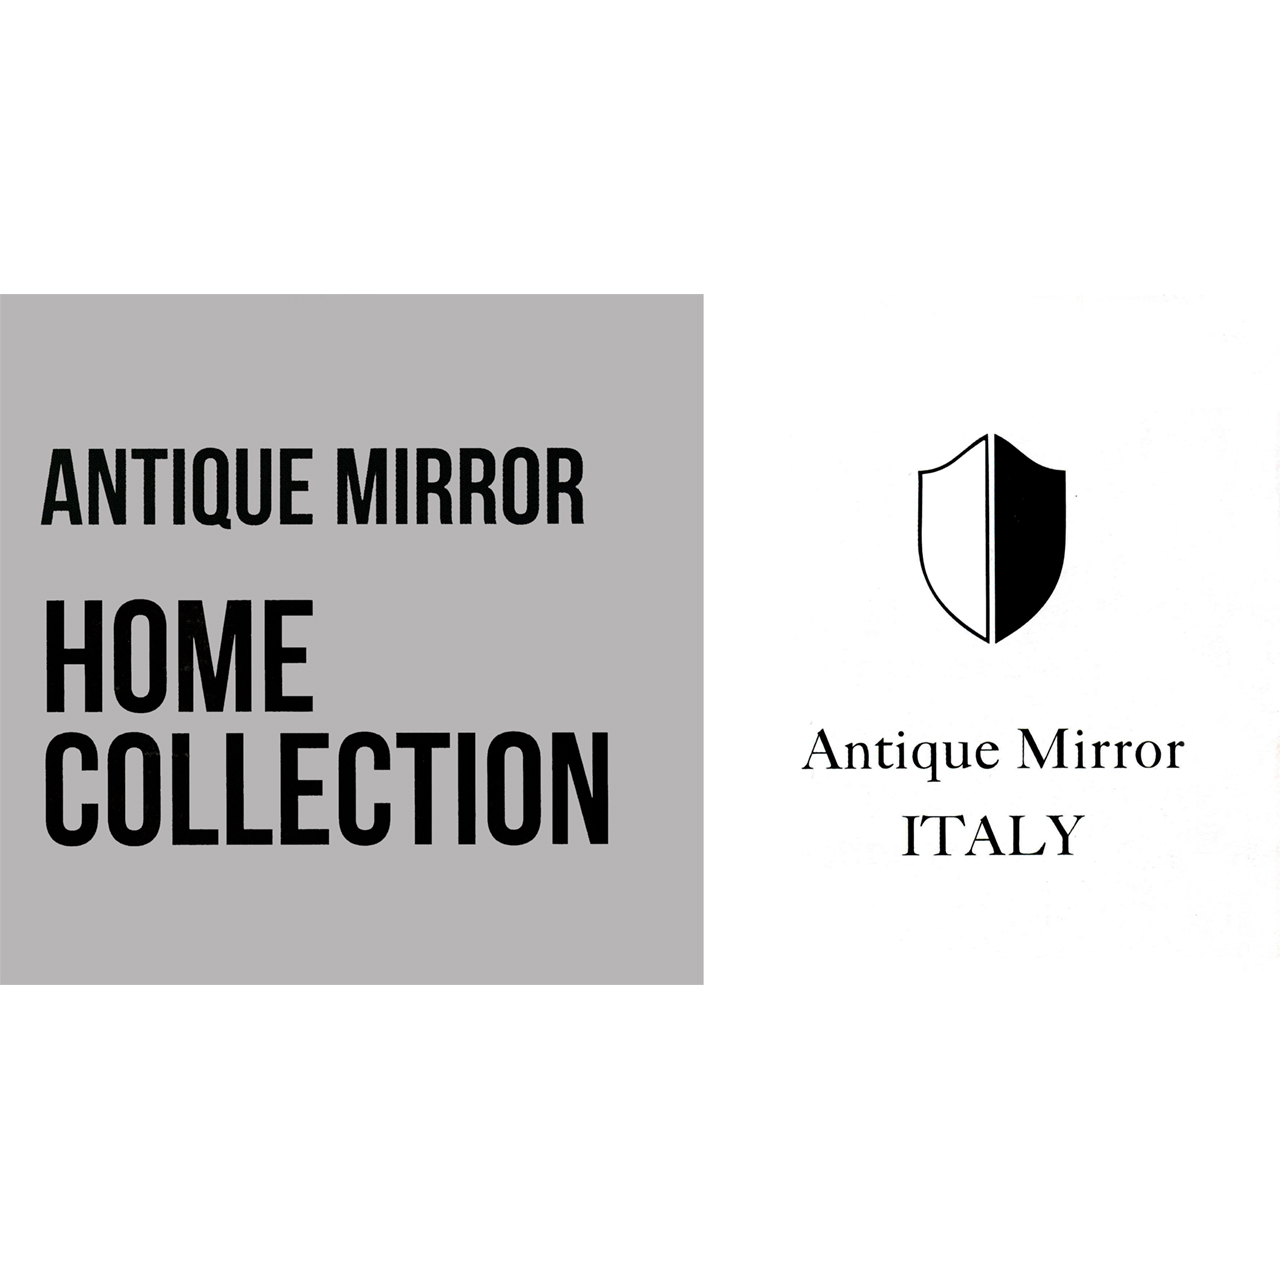 Broschüre Antique Mirror - Home Collection Produktflyer